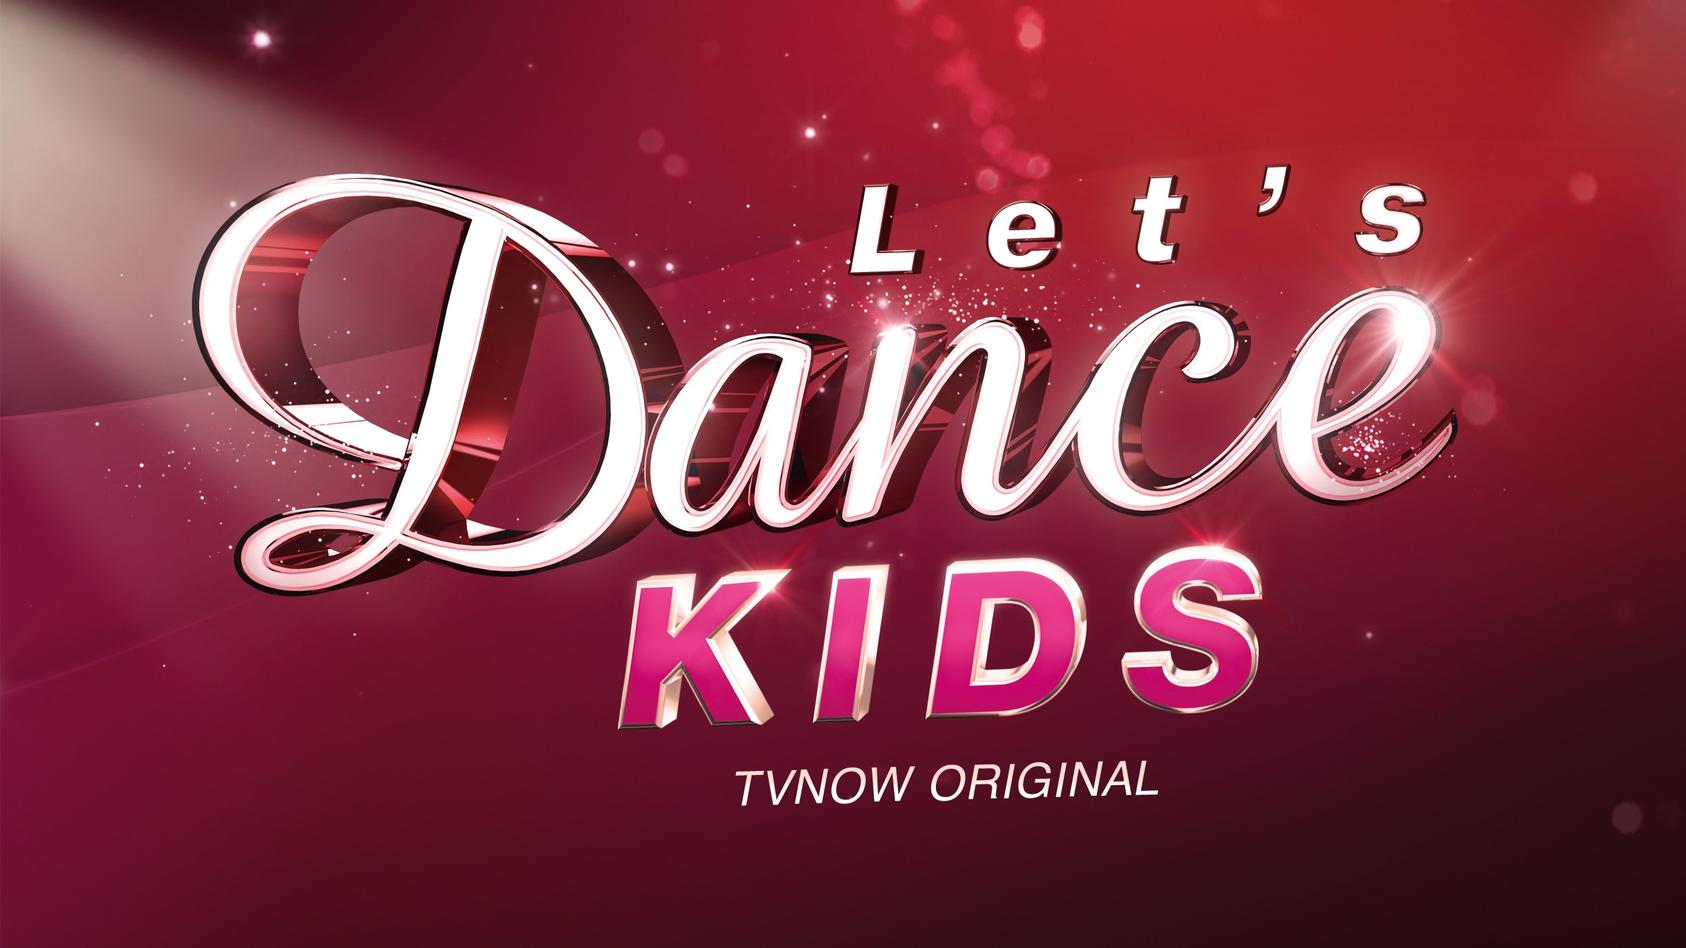 Das Logo von "Let's Dance Kids", einer Tanzshow, die exklusiv auf TVNOW zu sehen ist.